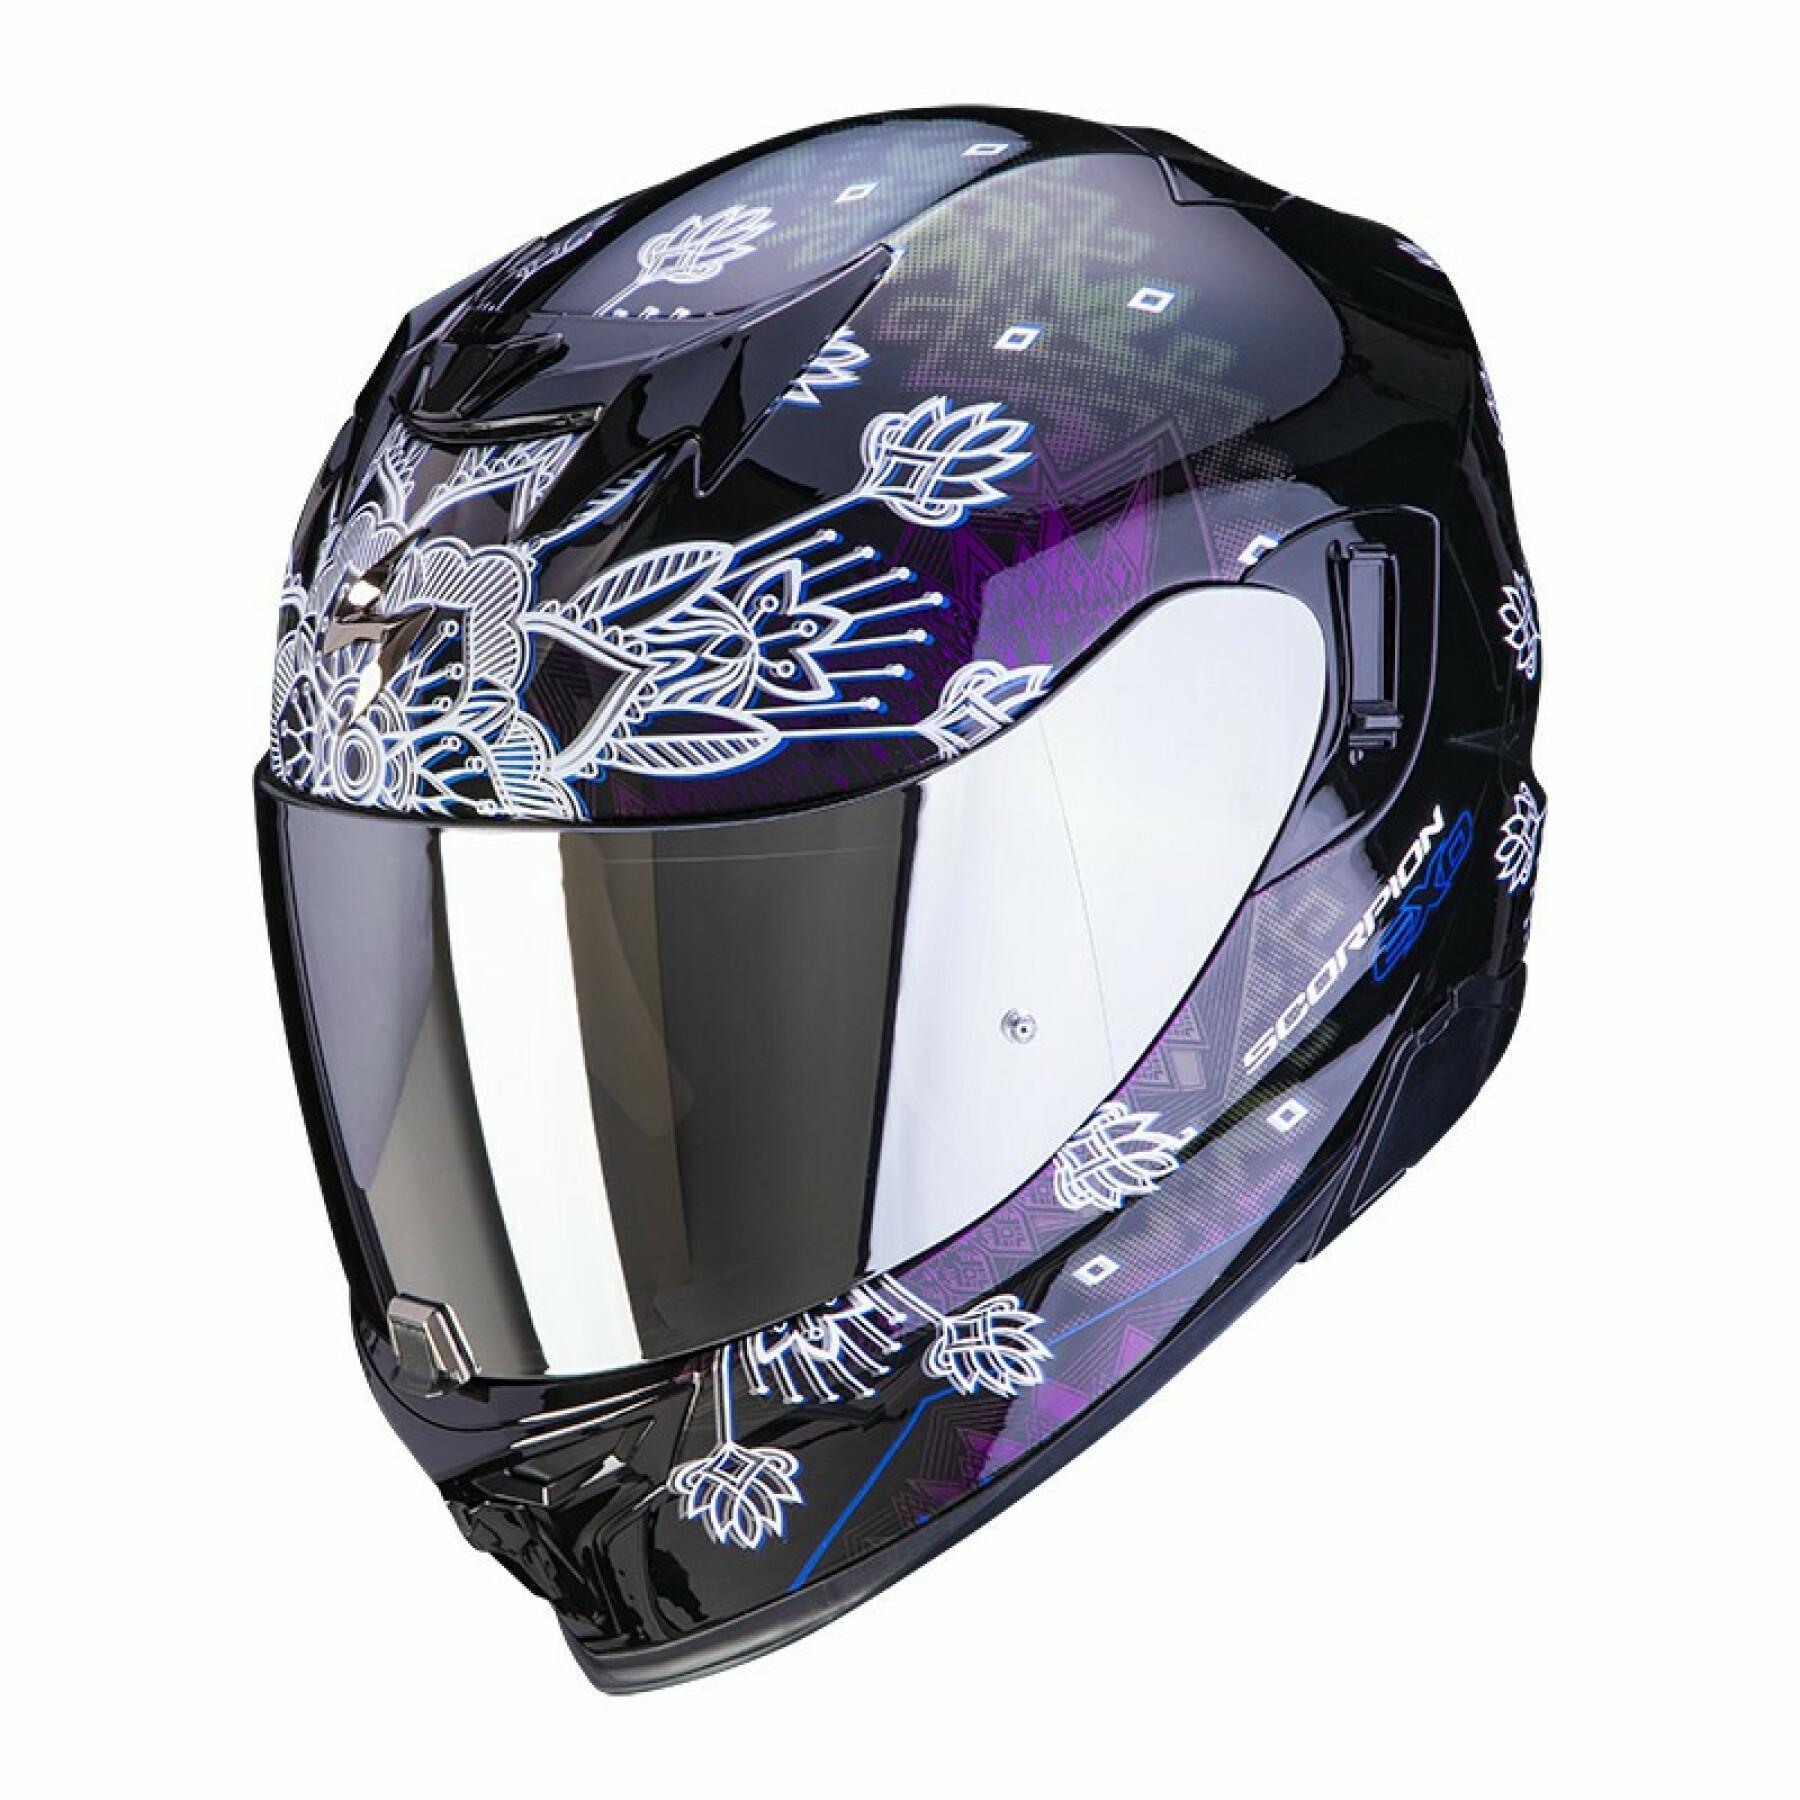 Full face helmet Scorpion Exo-520 Air TINA